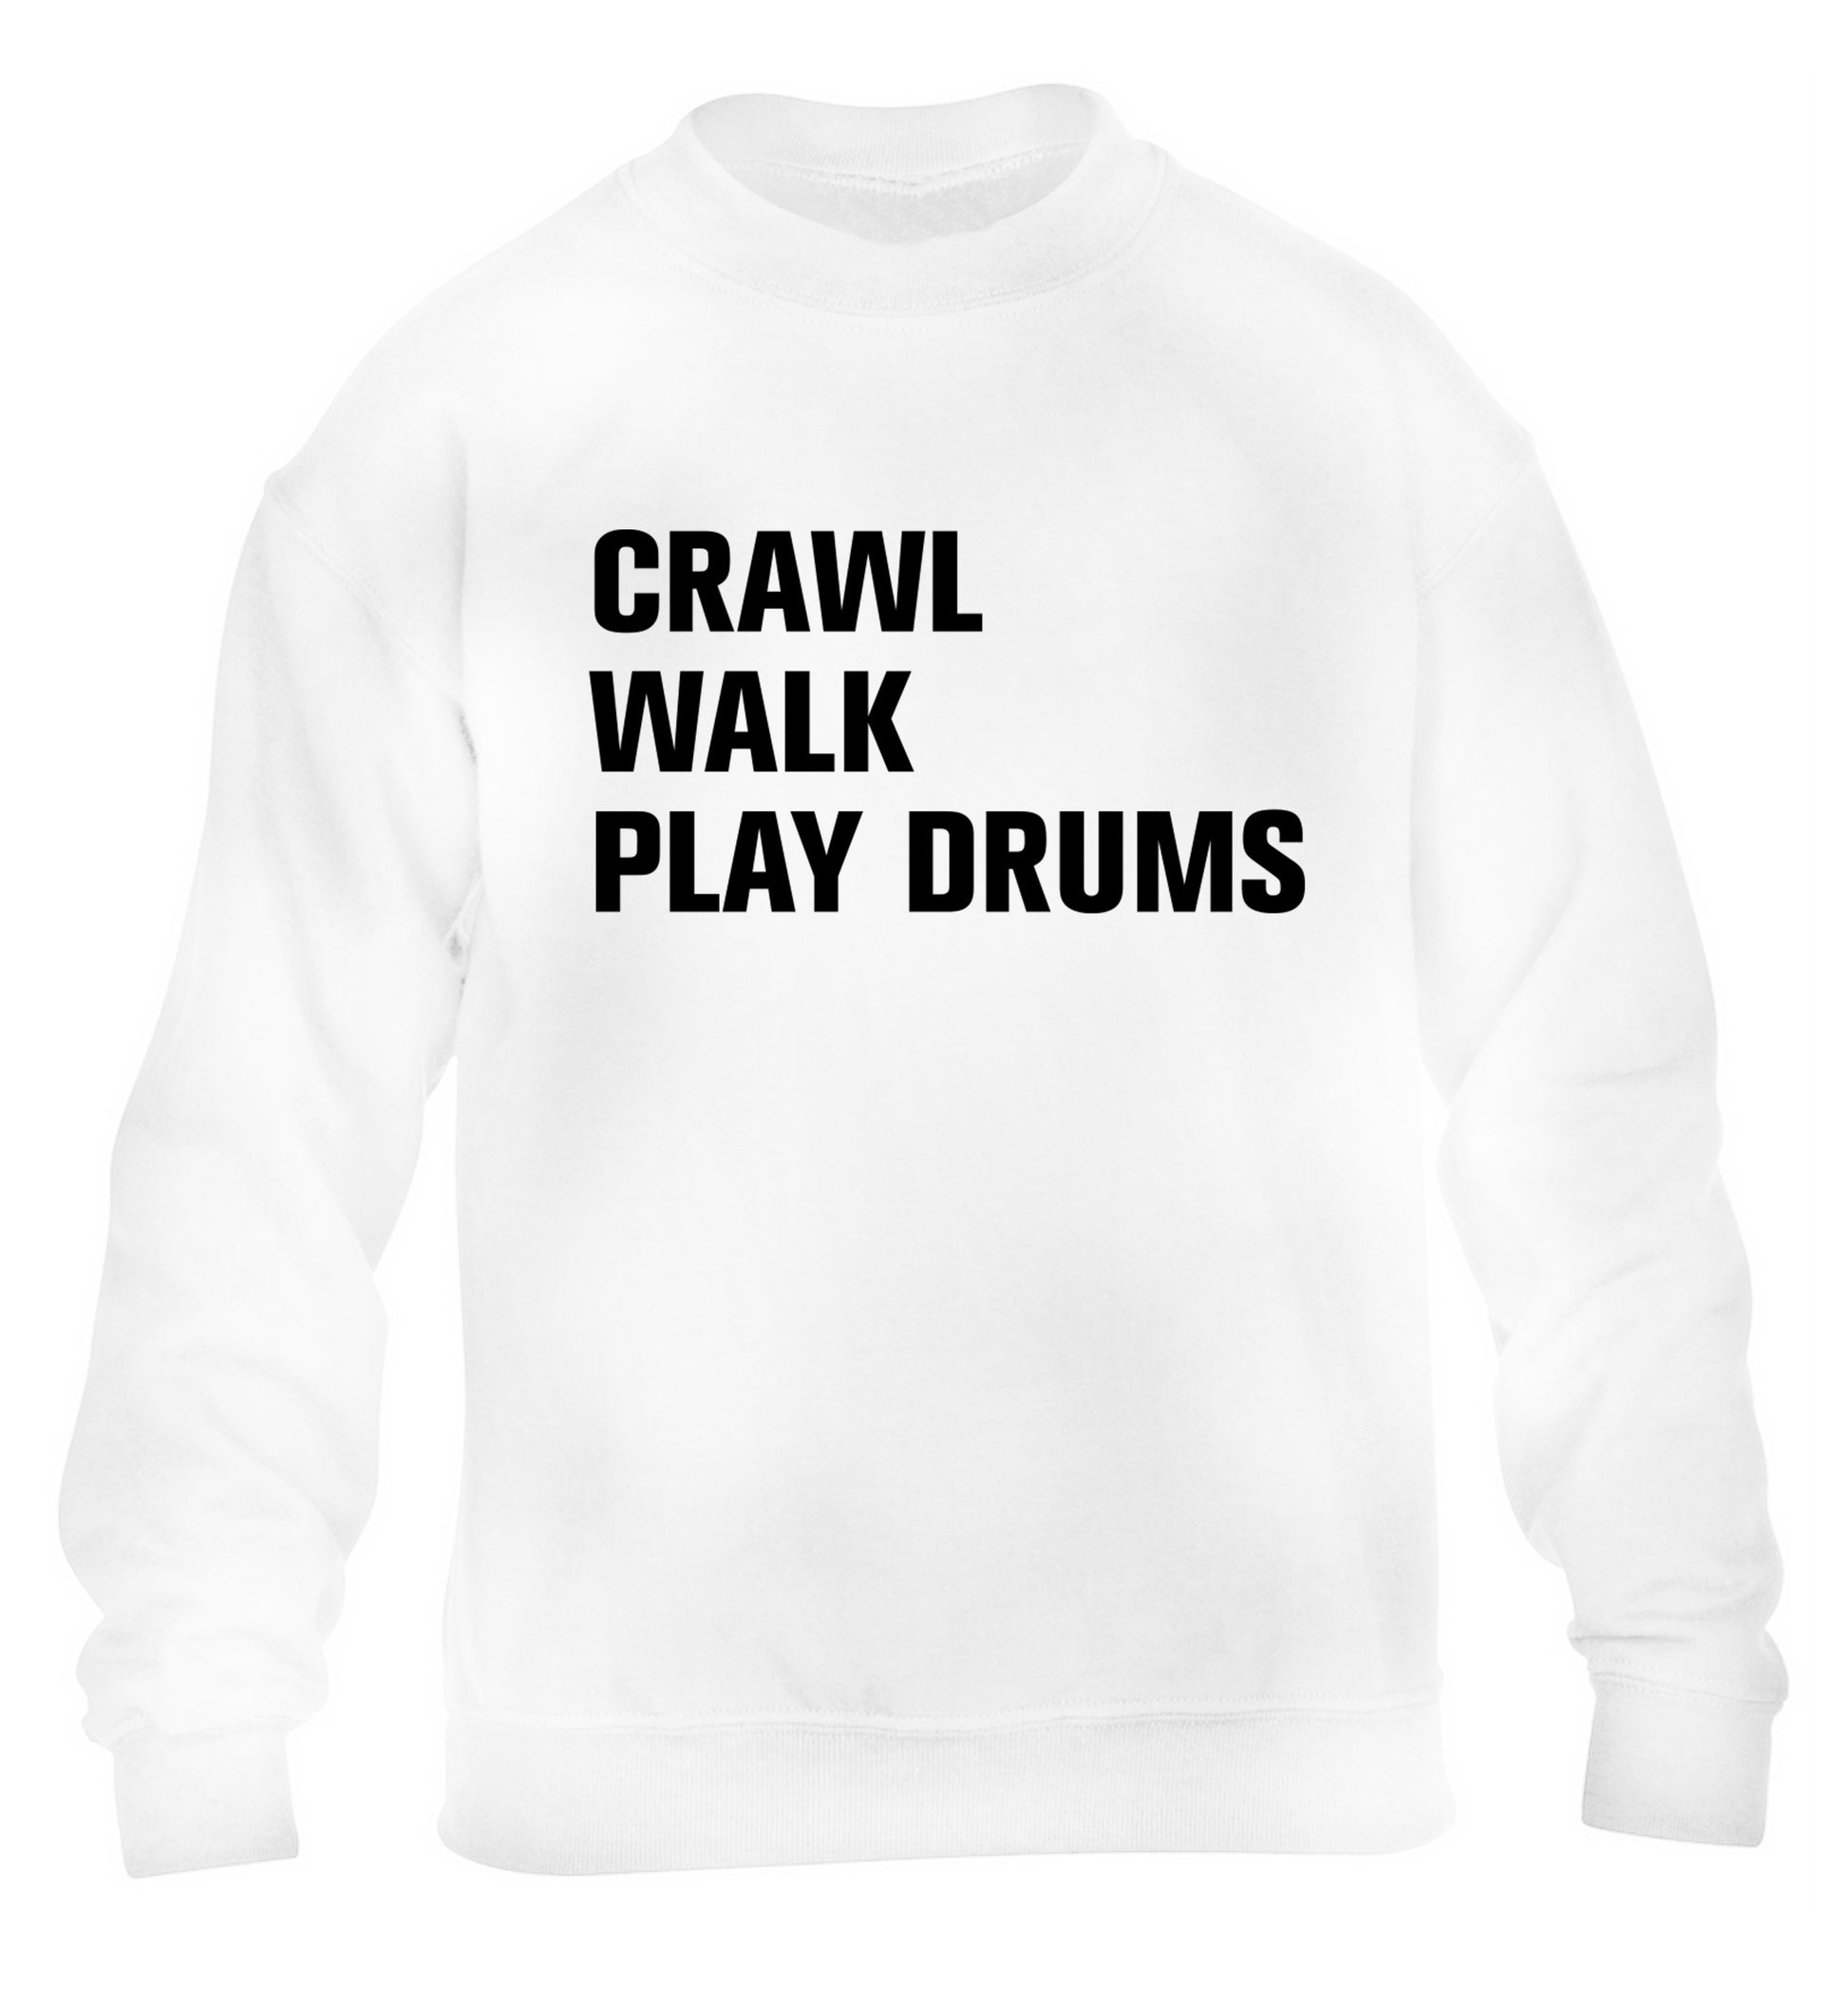 Crawl walk play drums children's white sweater 12-13 Years